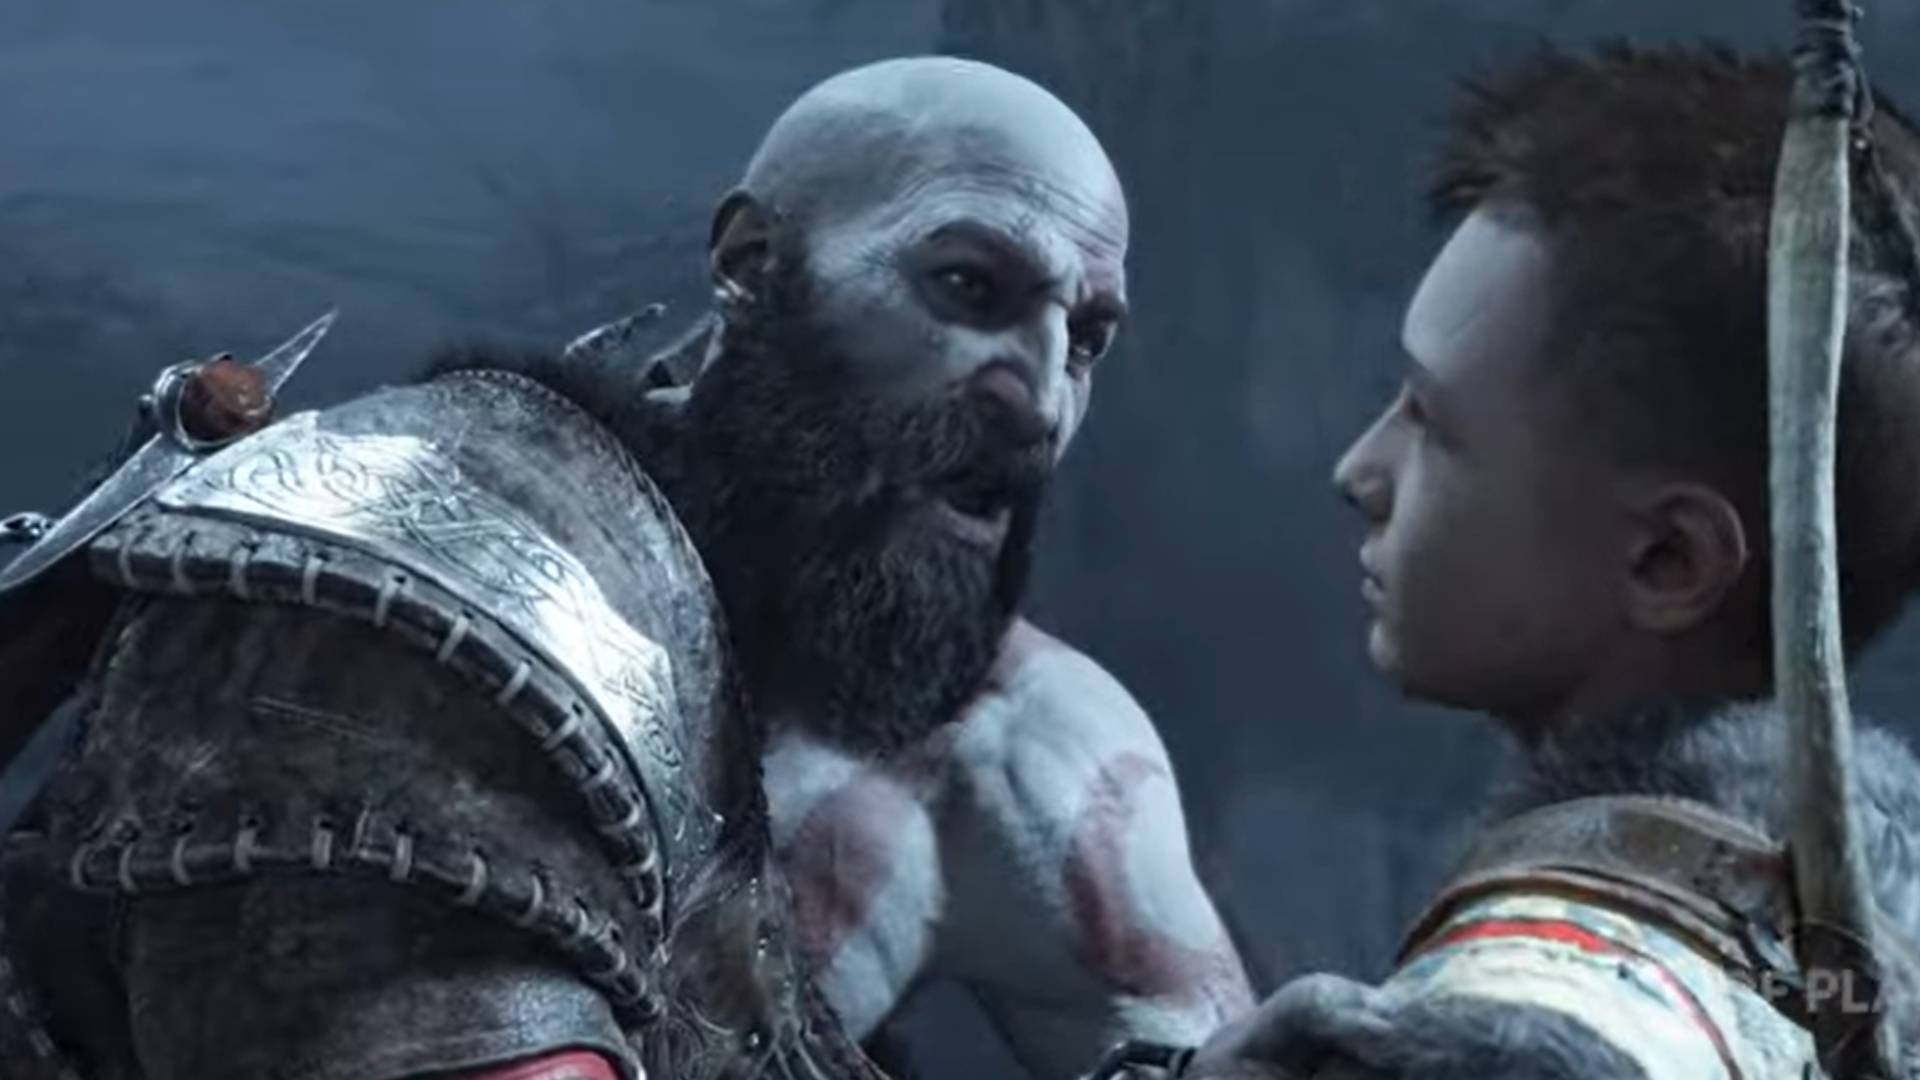 God of War Ragnarok recebe novo trailer e ganha data de lançamento